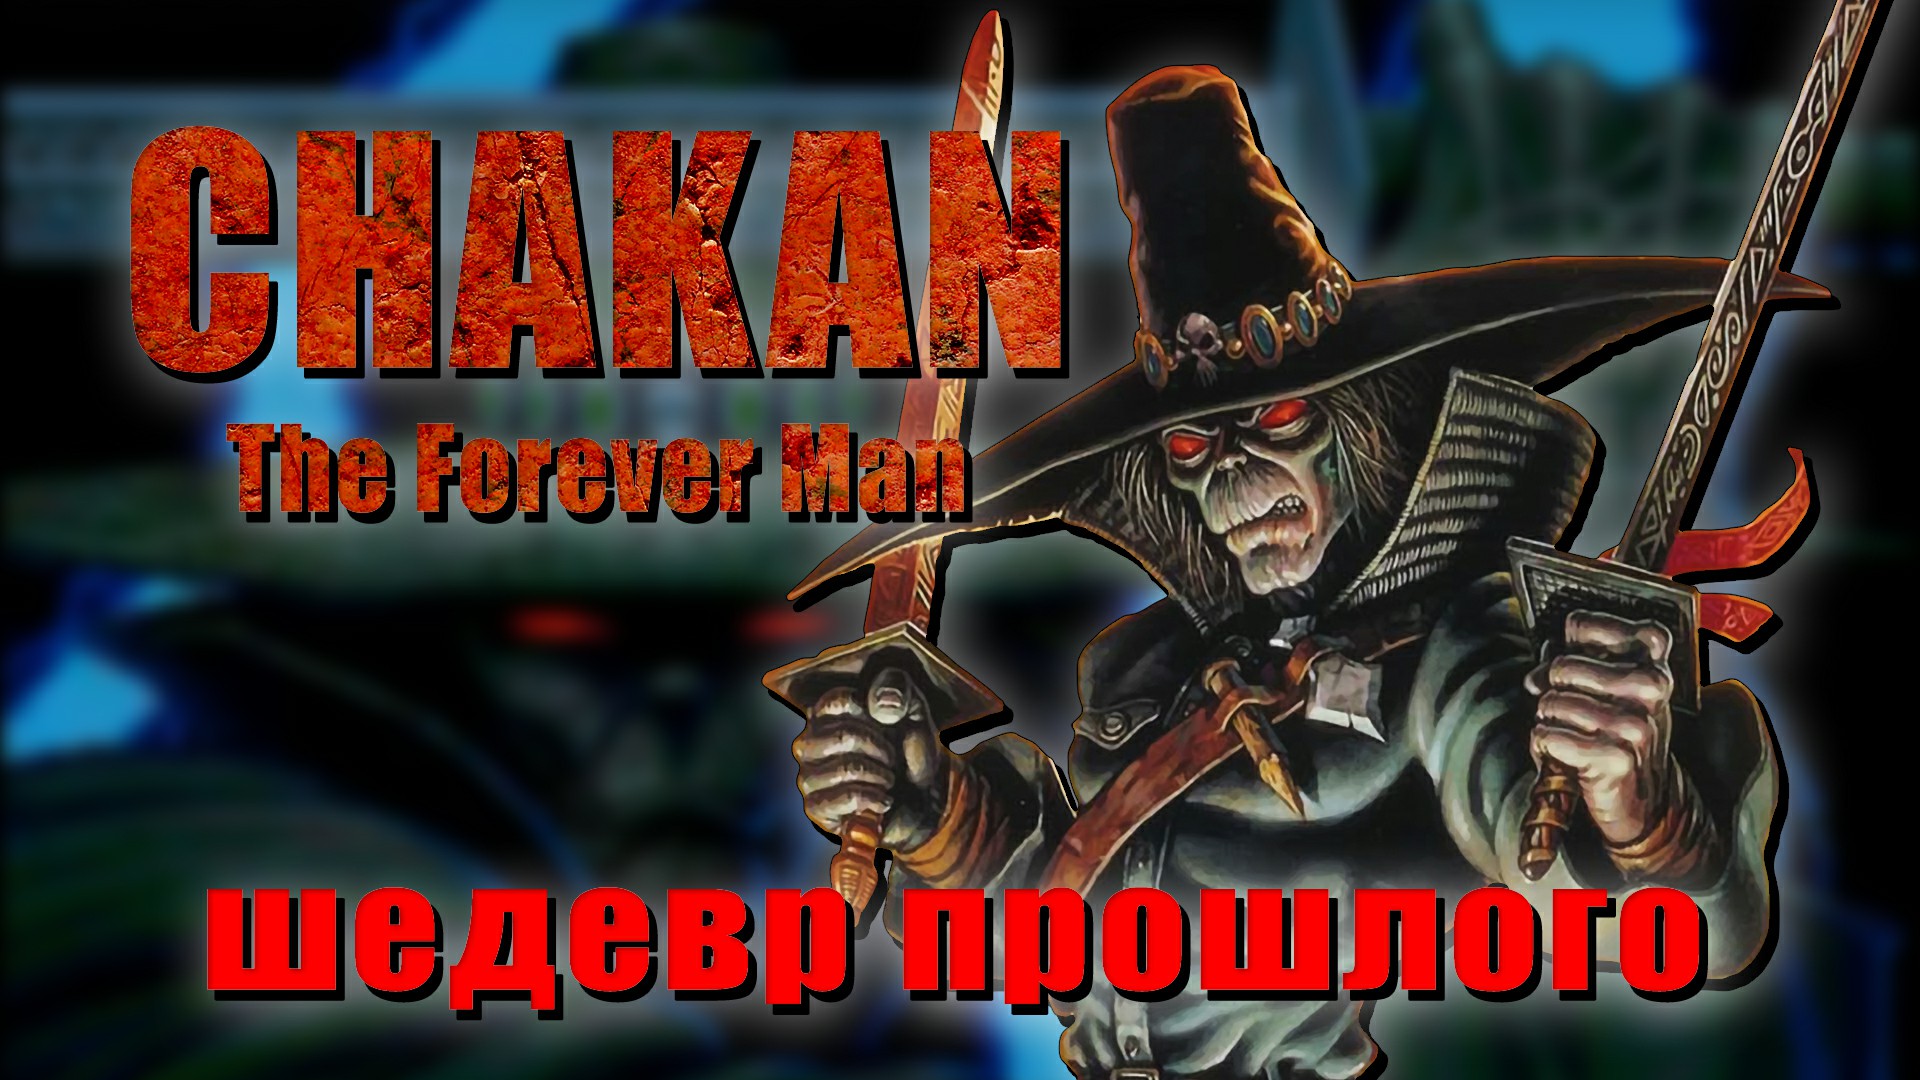 Шедевры прошлого. Chakan The Forever Man для Mega Drive. Ностальгический рассказ